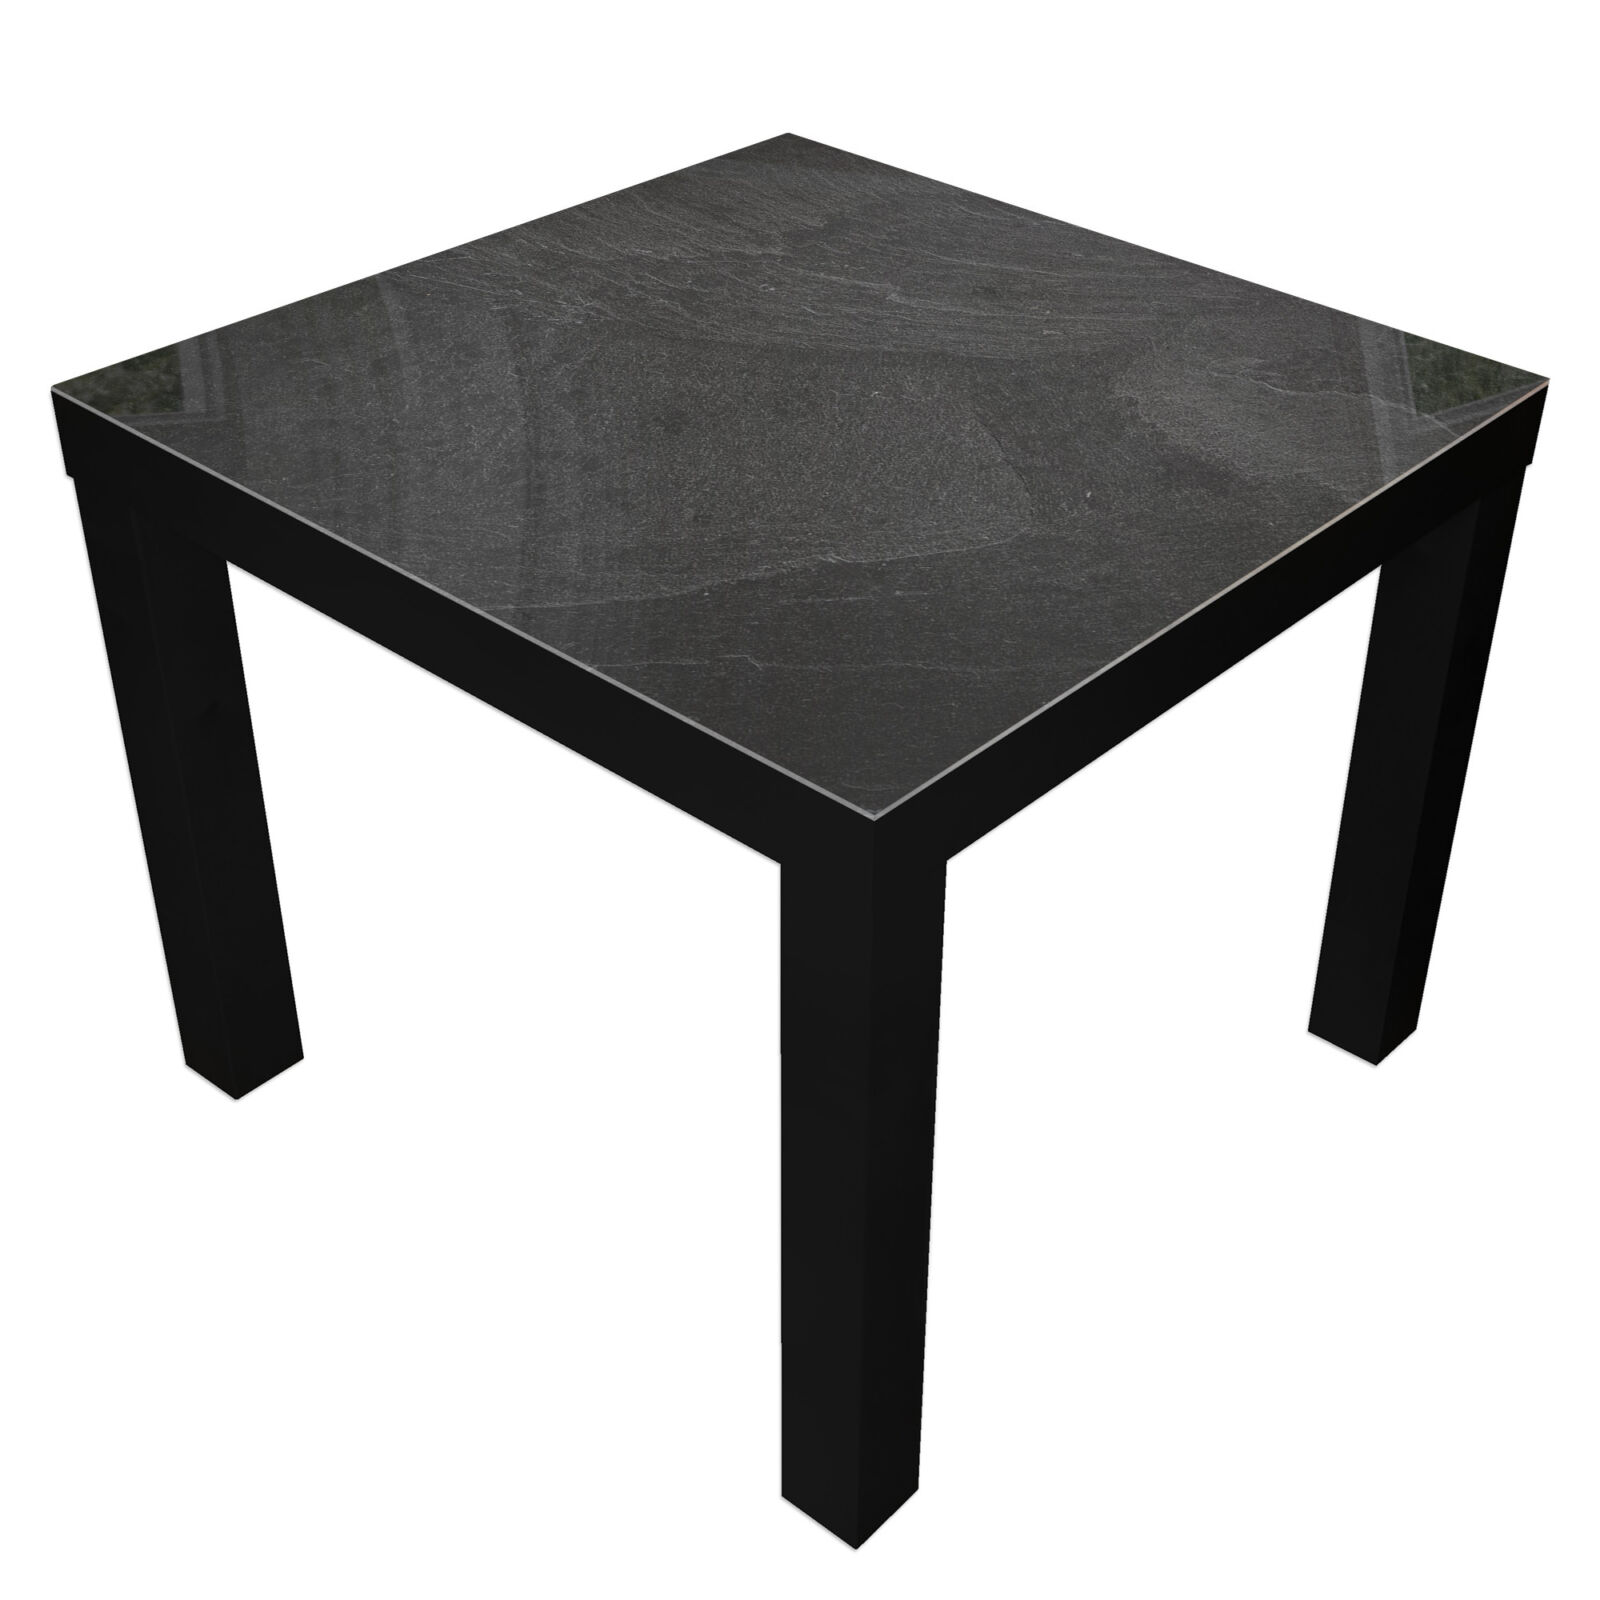 Tafels Lack zwart x 55 cm inclusief glas - Designglas